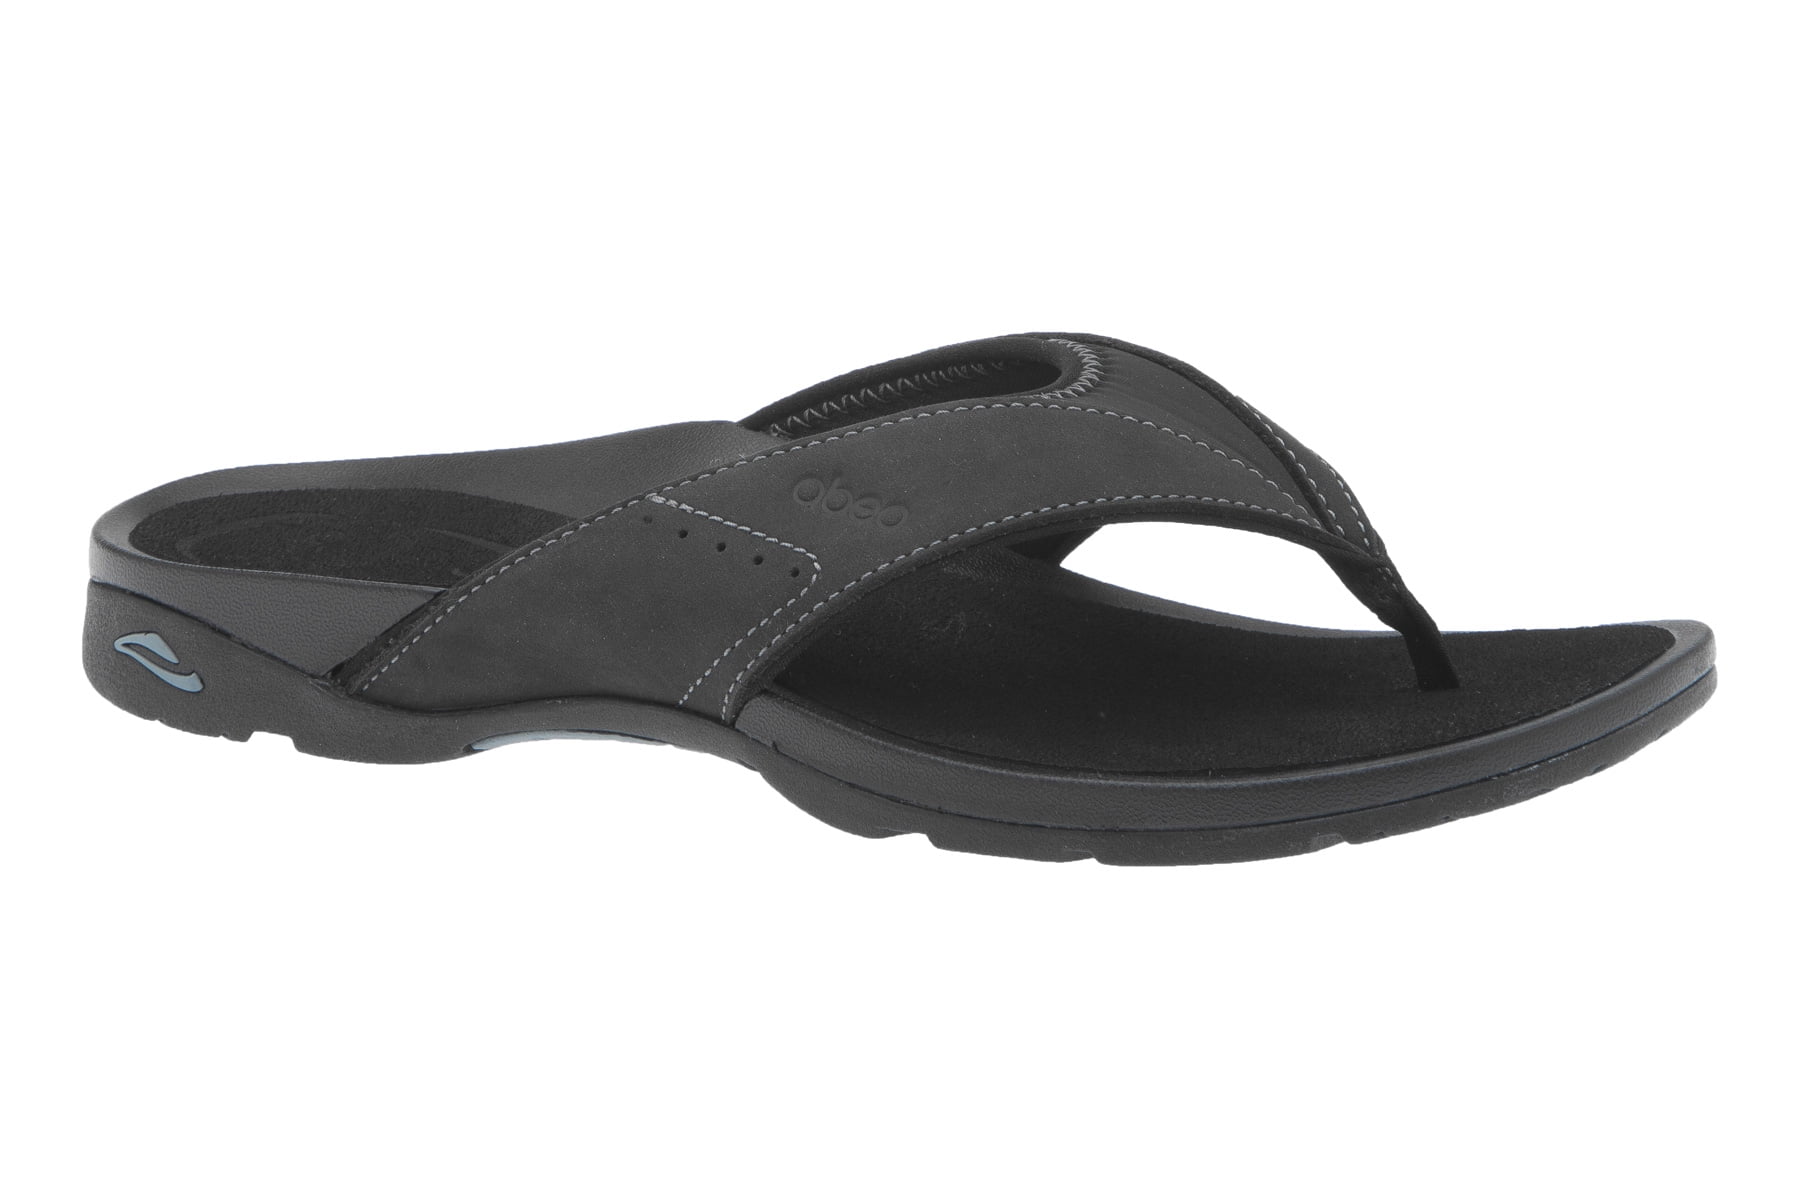 Balboa - Flip Flop Sandals Walmart.com